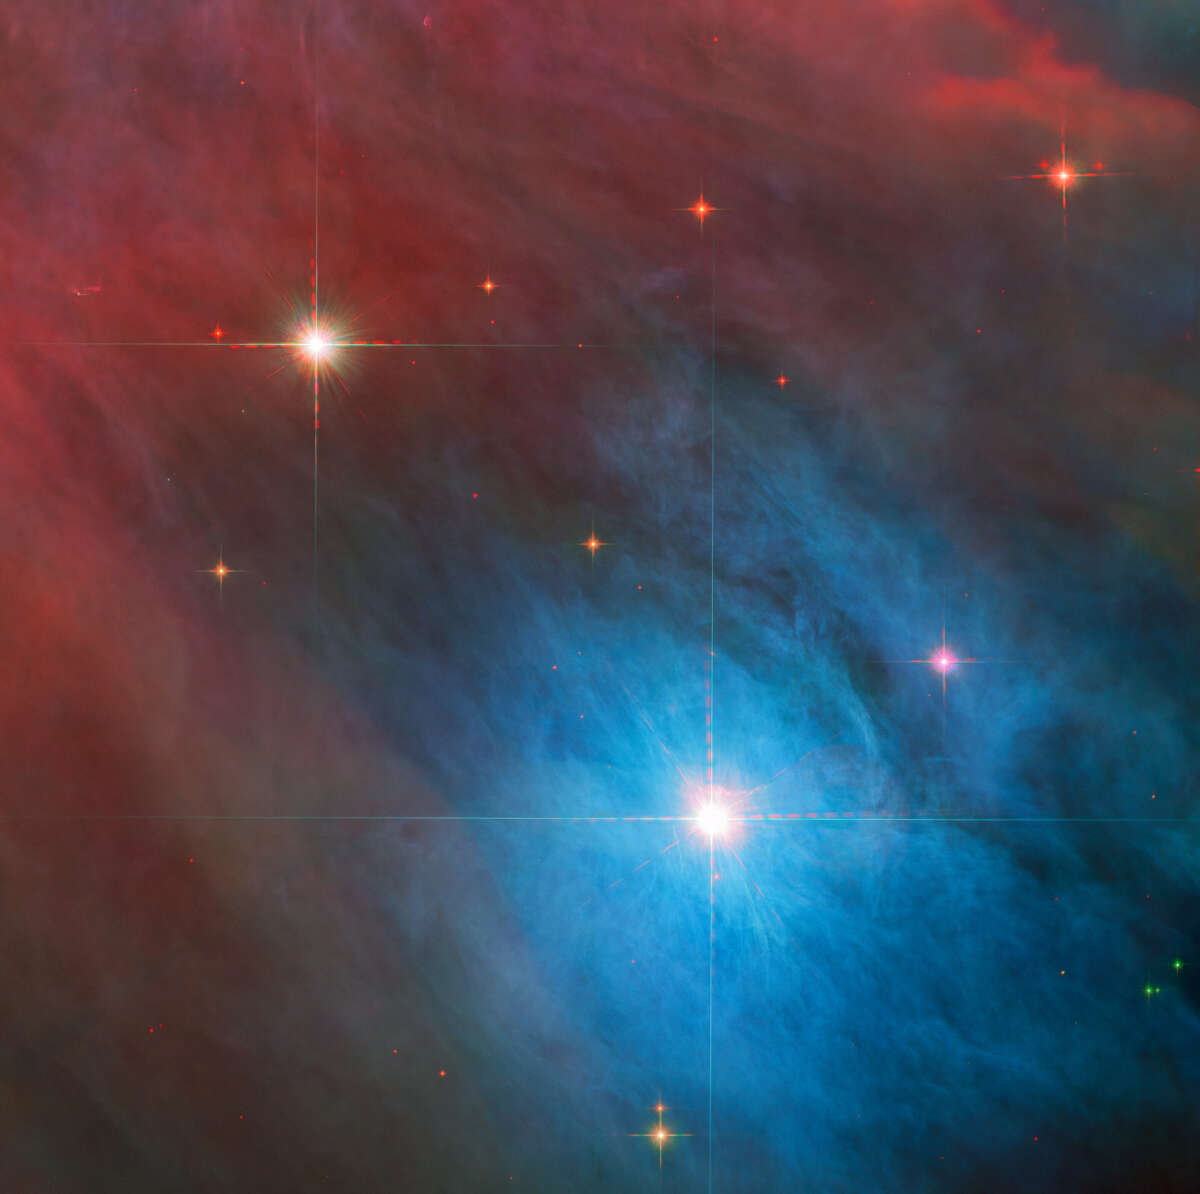 «Хаббл» рассмотрел переменную звезду V 372 Orionis и ее компаньона